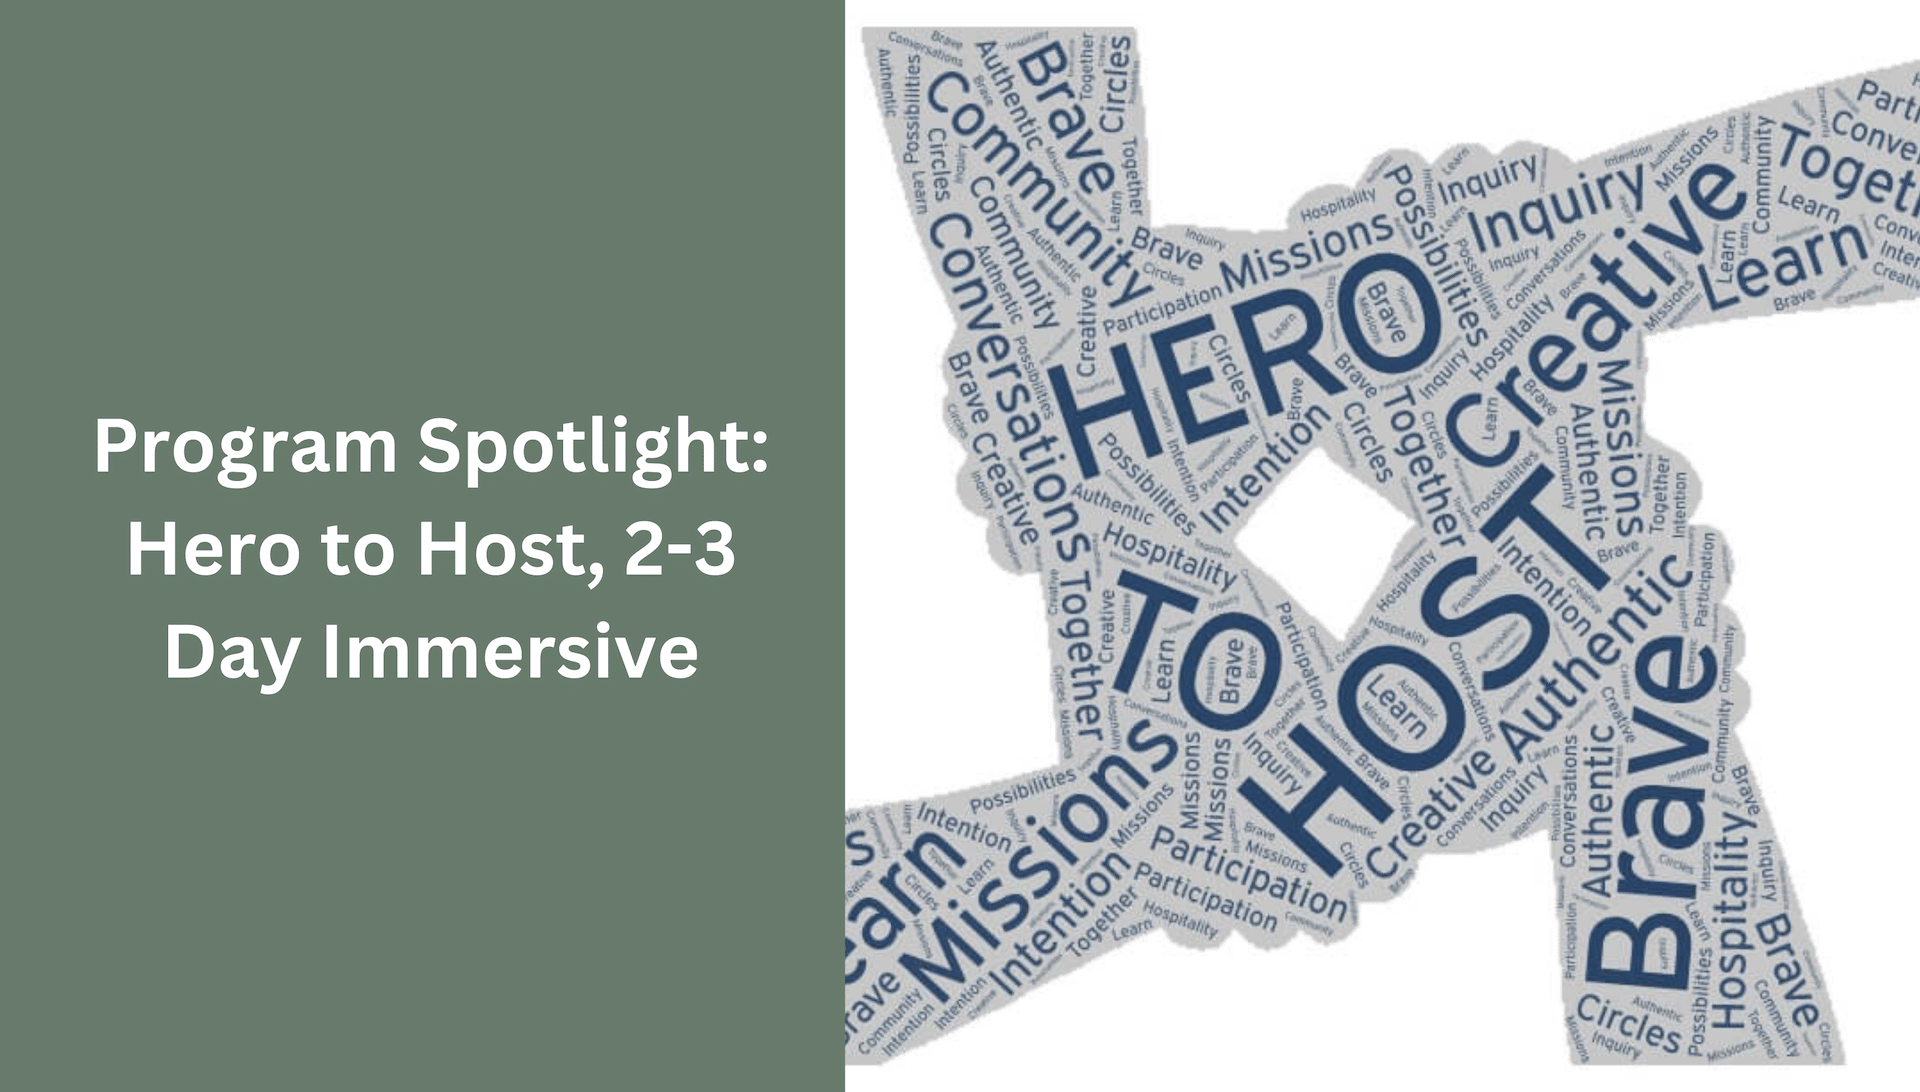 Program Spotlight: Hero to Host, 2-3 Day Immersive